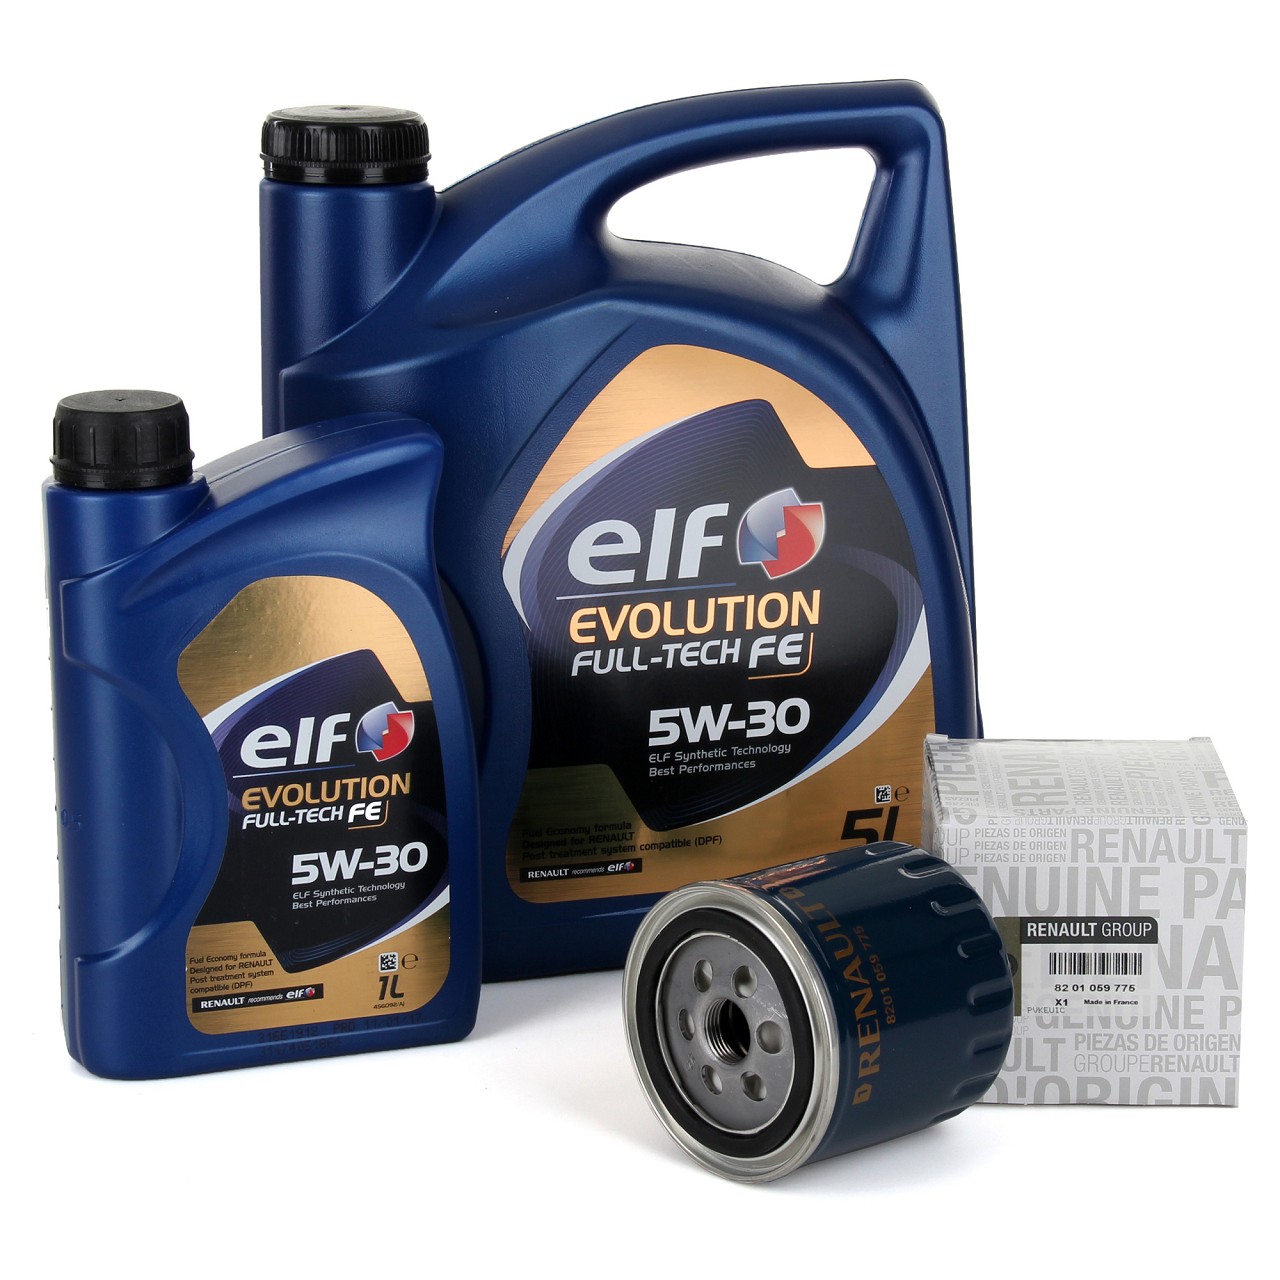 6L elf Evolution Full-Tech FE 5W-30 Motoröl ORIGINAL Renault Ölfilter 8201059775